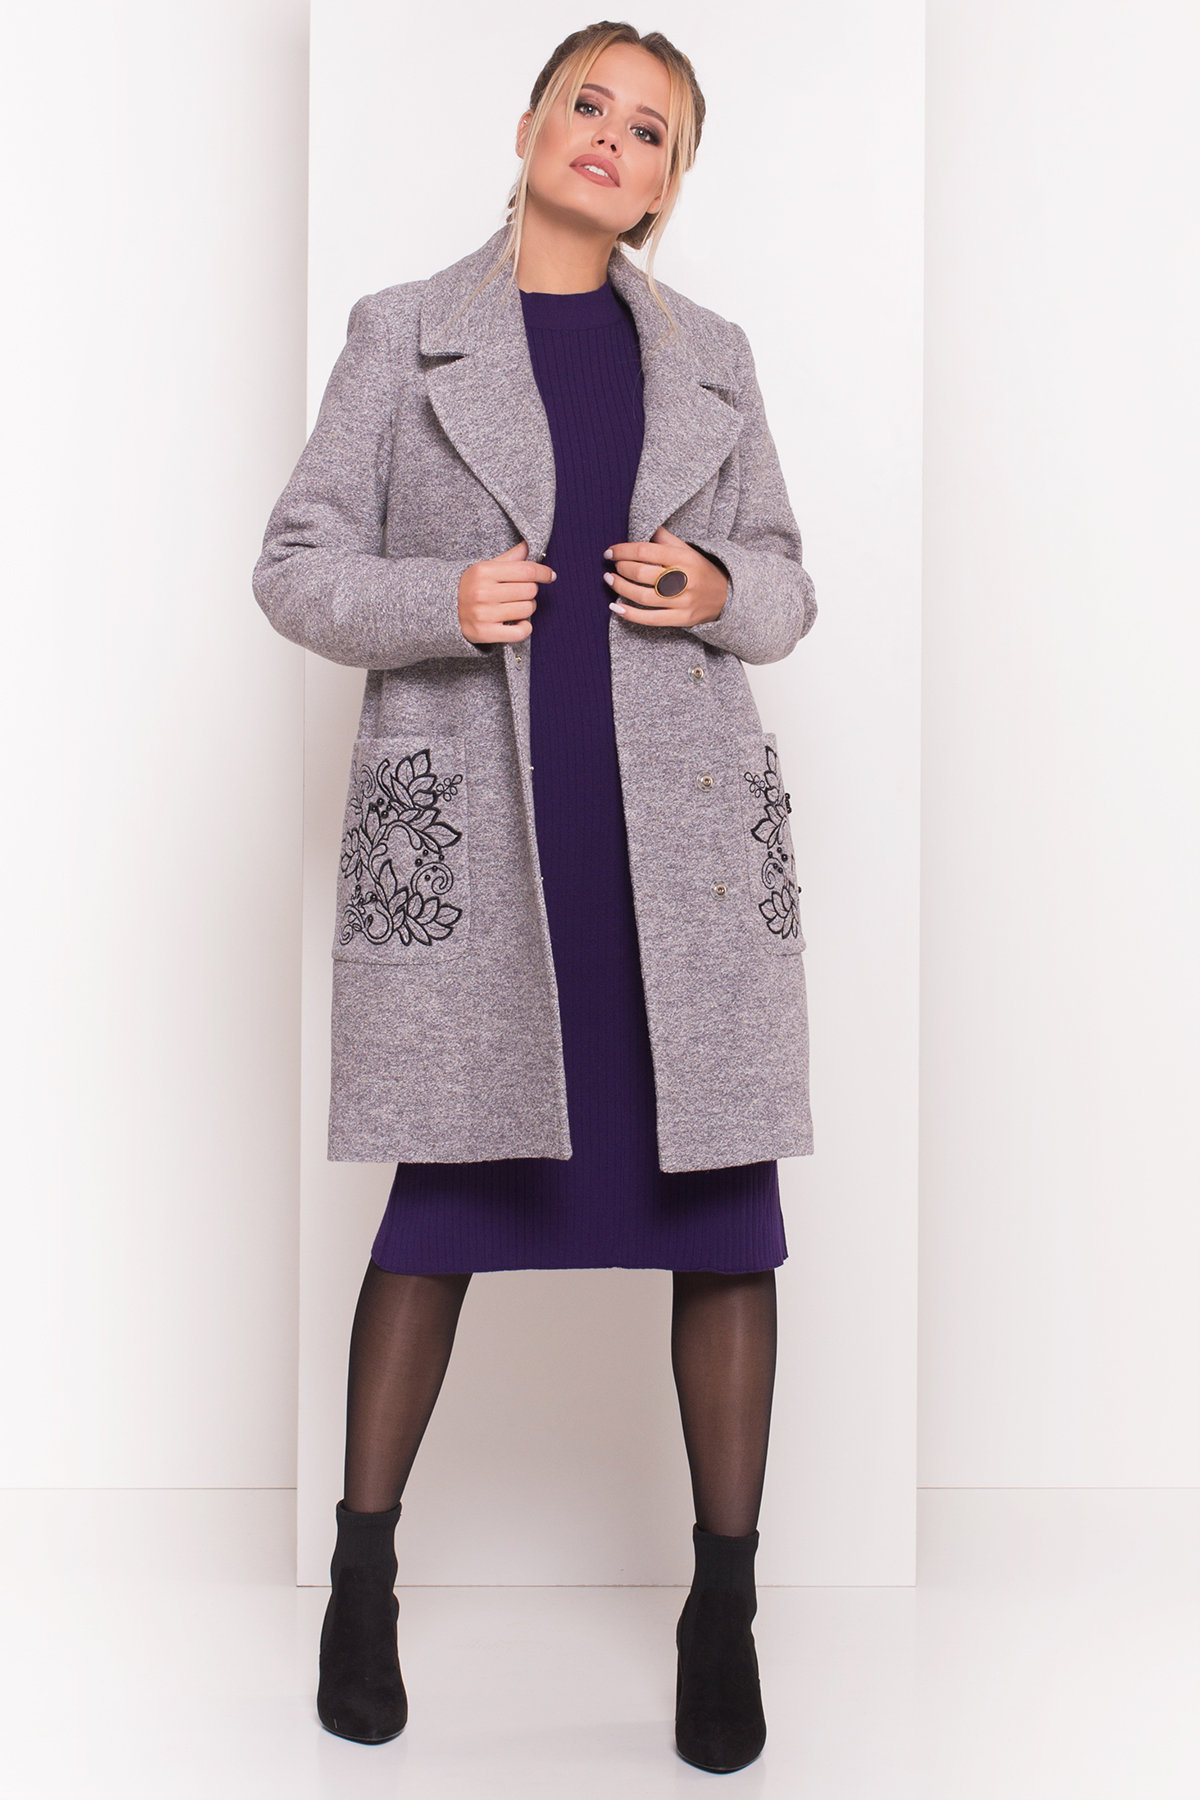 Демисезонное пальто из варенной шерсти Милена 5273 АРТ. 37587 Цвет: Серый LW-10 - фото 3, интернет магазин tm-modus.ru